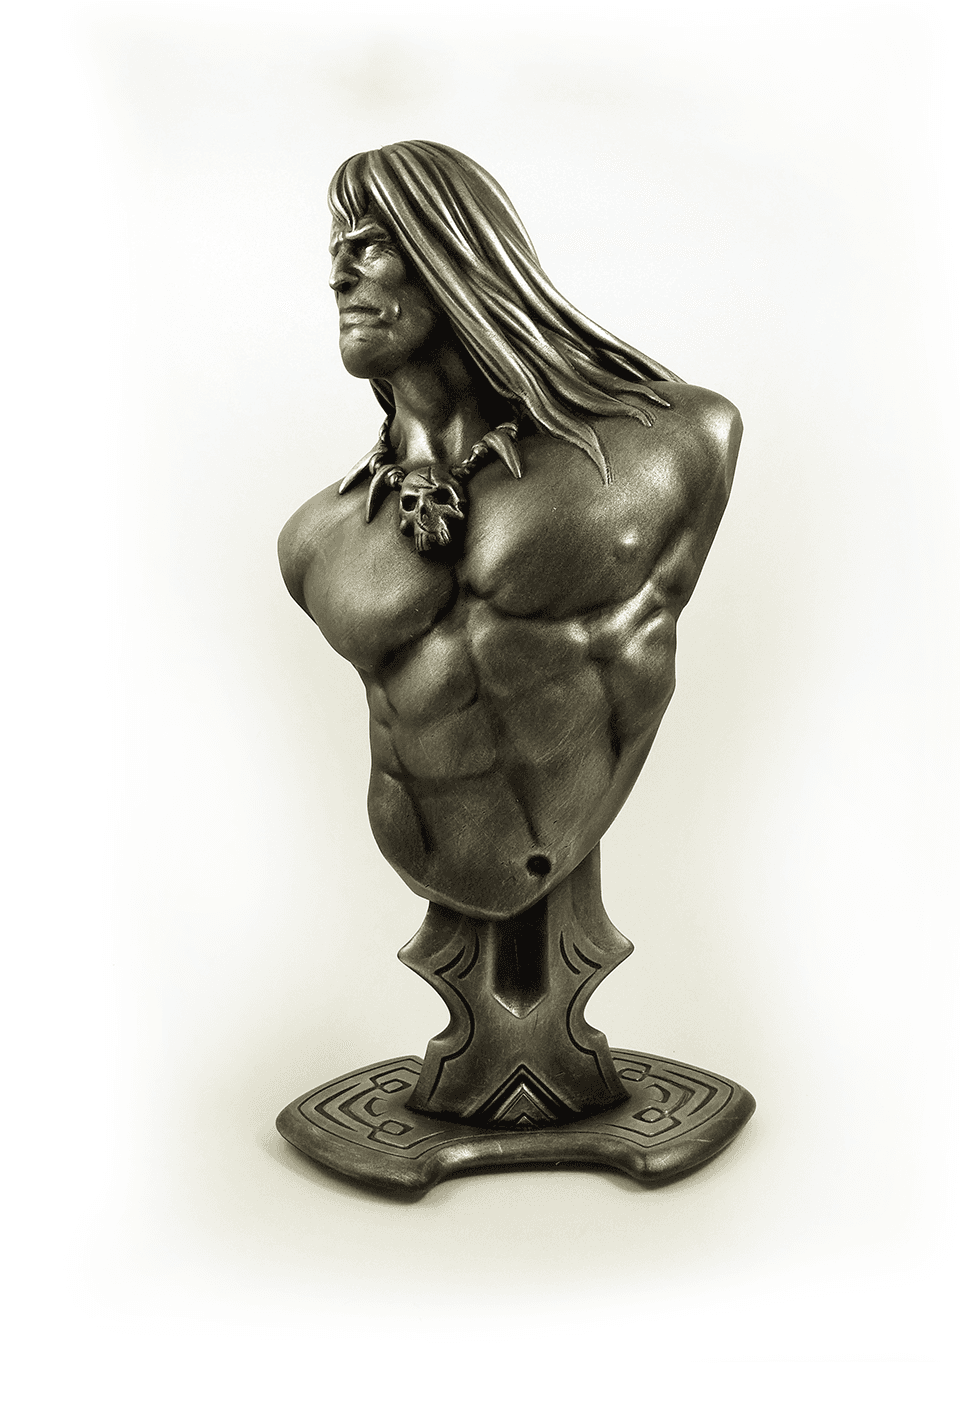 Conan the Barbarian bust (fan art) 3d model